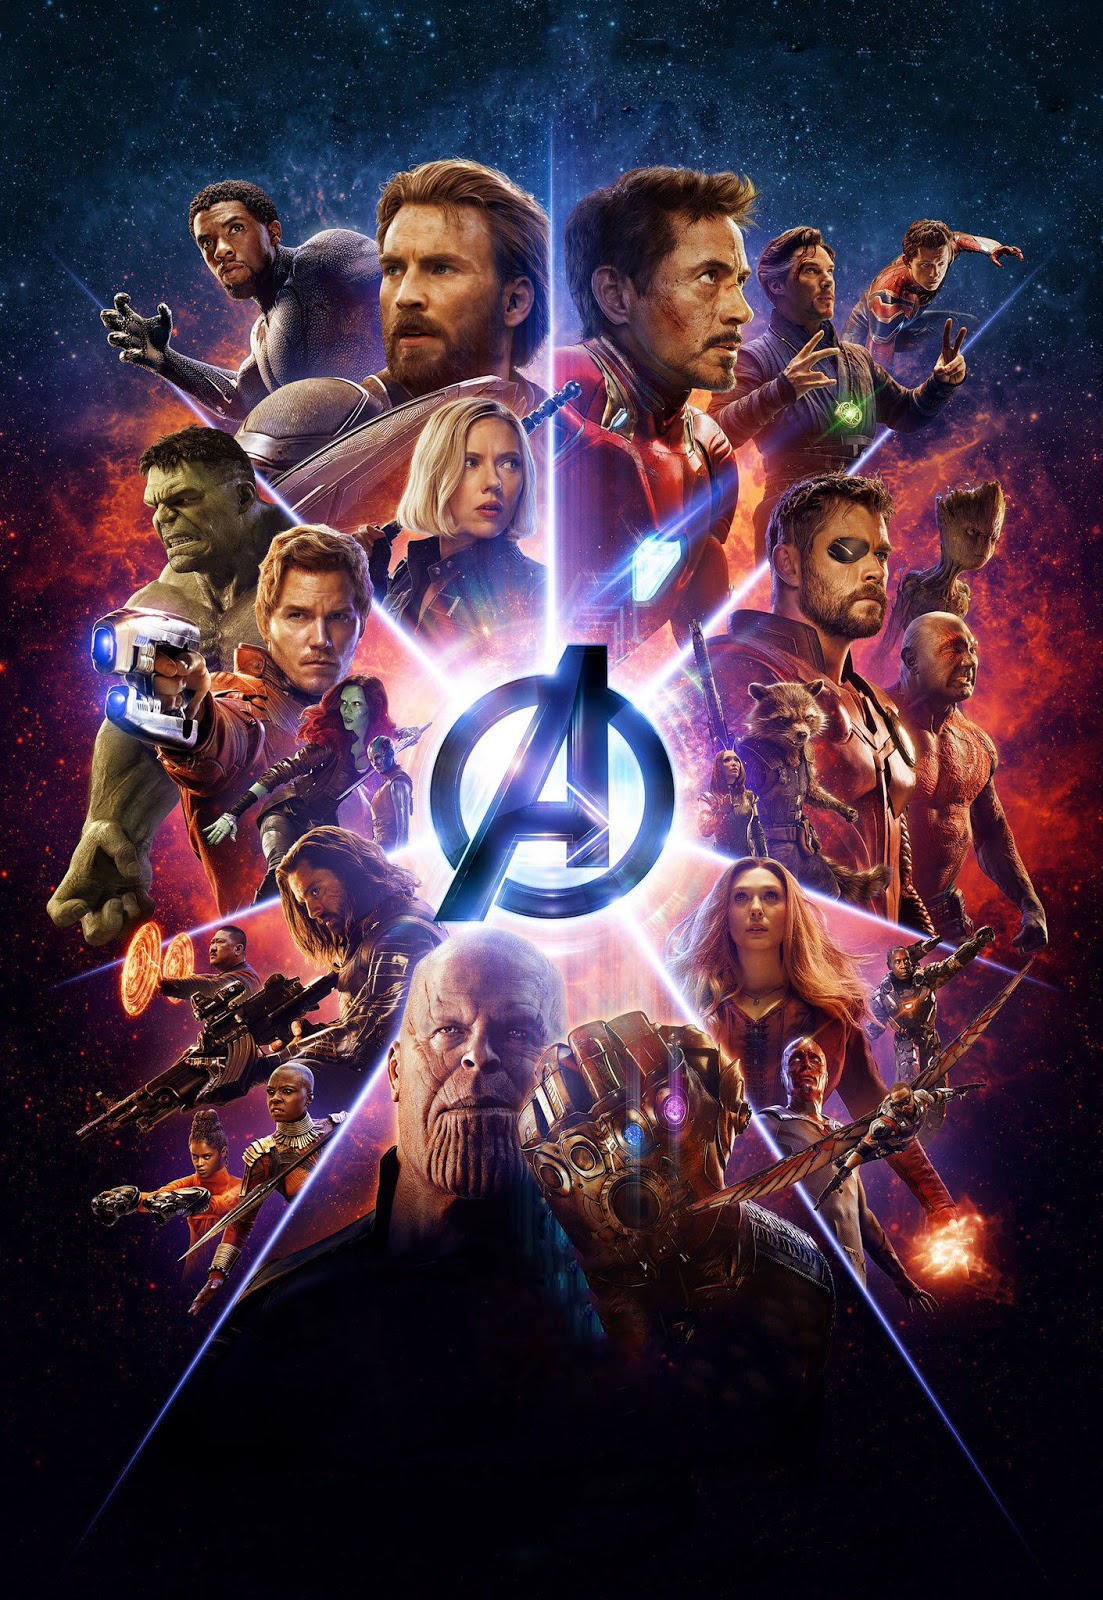  Avengers  Endgame  Hd  Wallpaper  For Mobile Free Wallpaper  